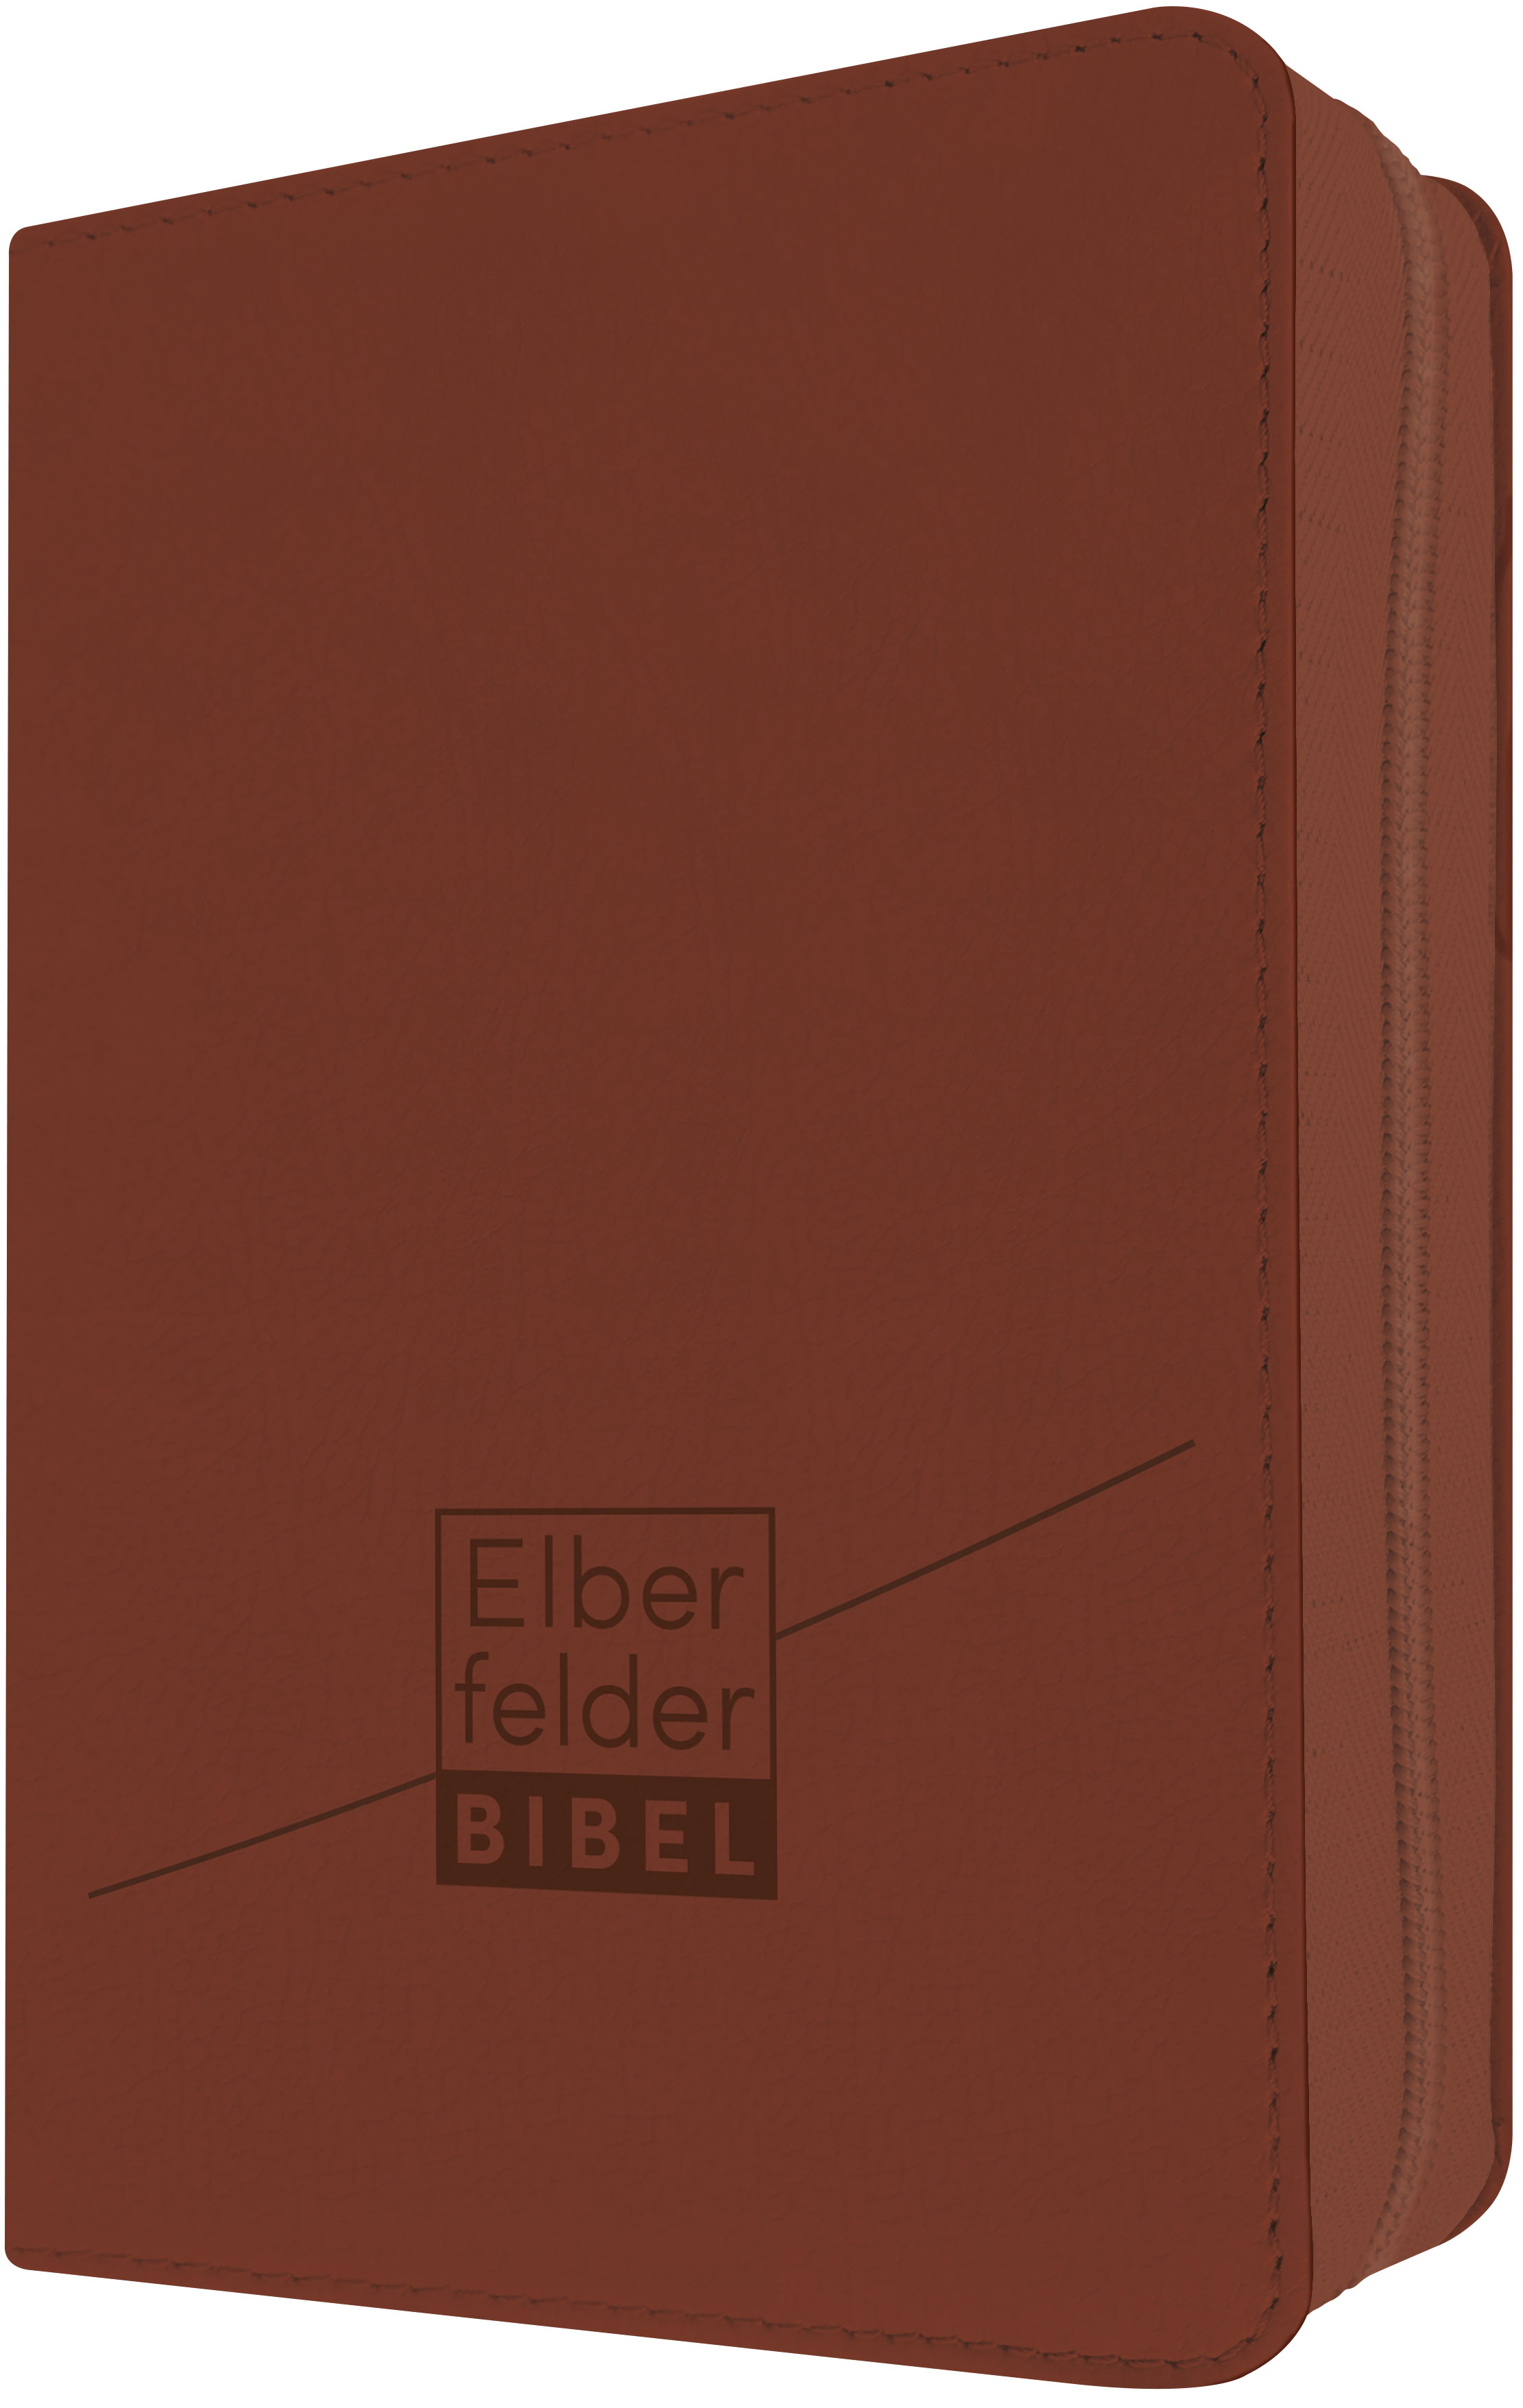 Elberfelder Bibel – Kunstleder Reißverschl. - Taschenausgabe